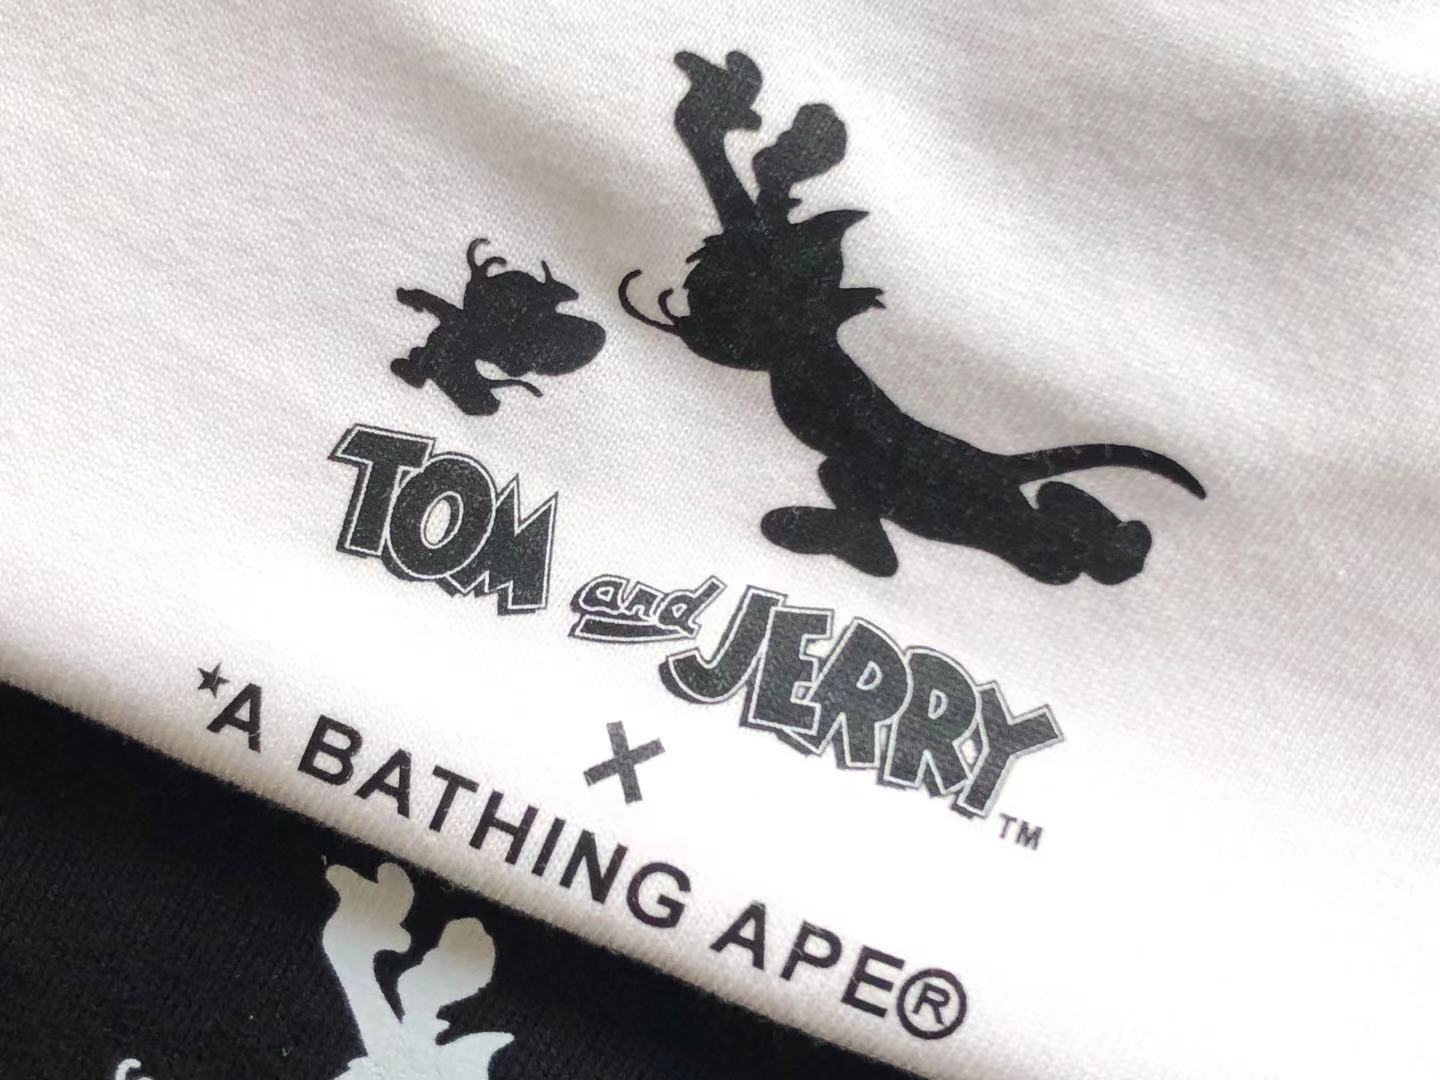 Bathing Ape Bape Tee tom and jerry 158 Hk271211